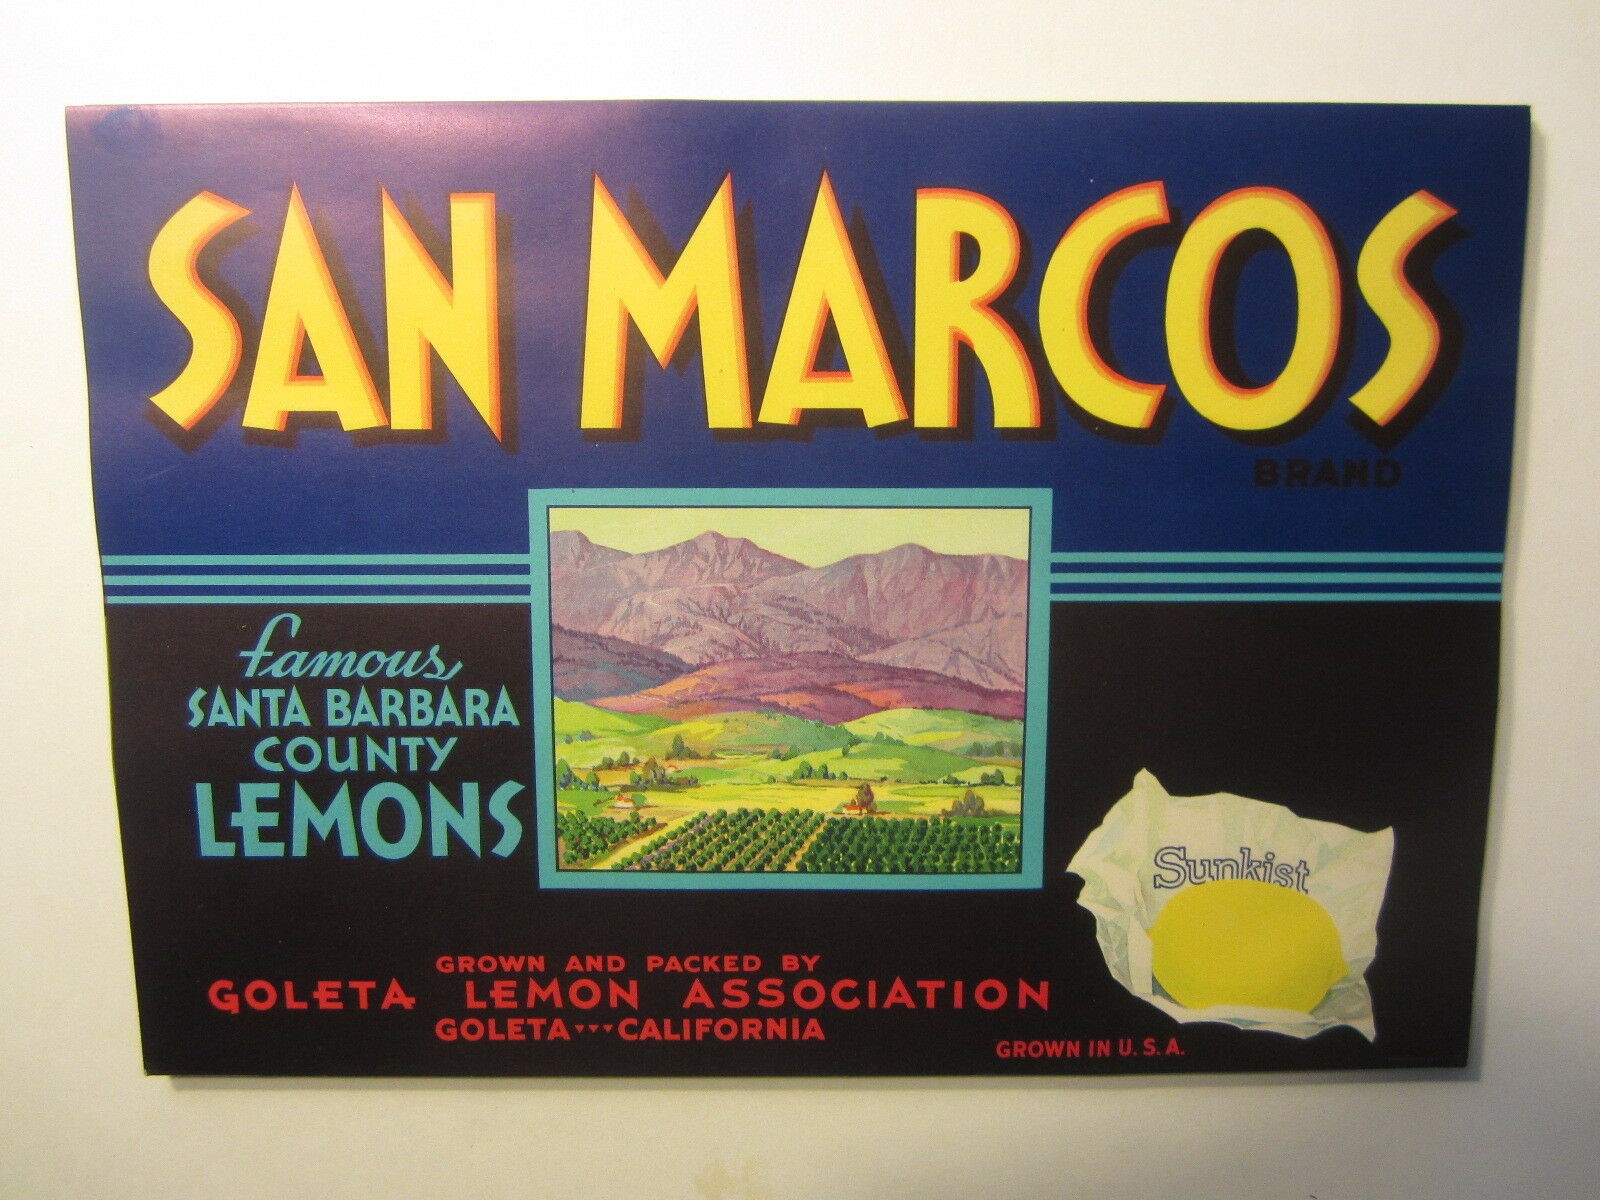  Lot of 100 Old Vintage SAN MARCOS Sunkist LEMO...